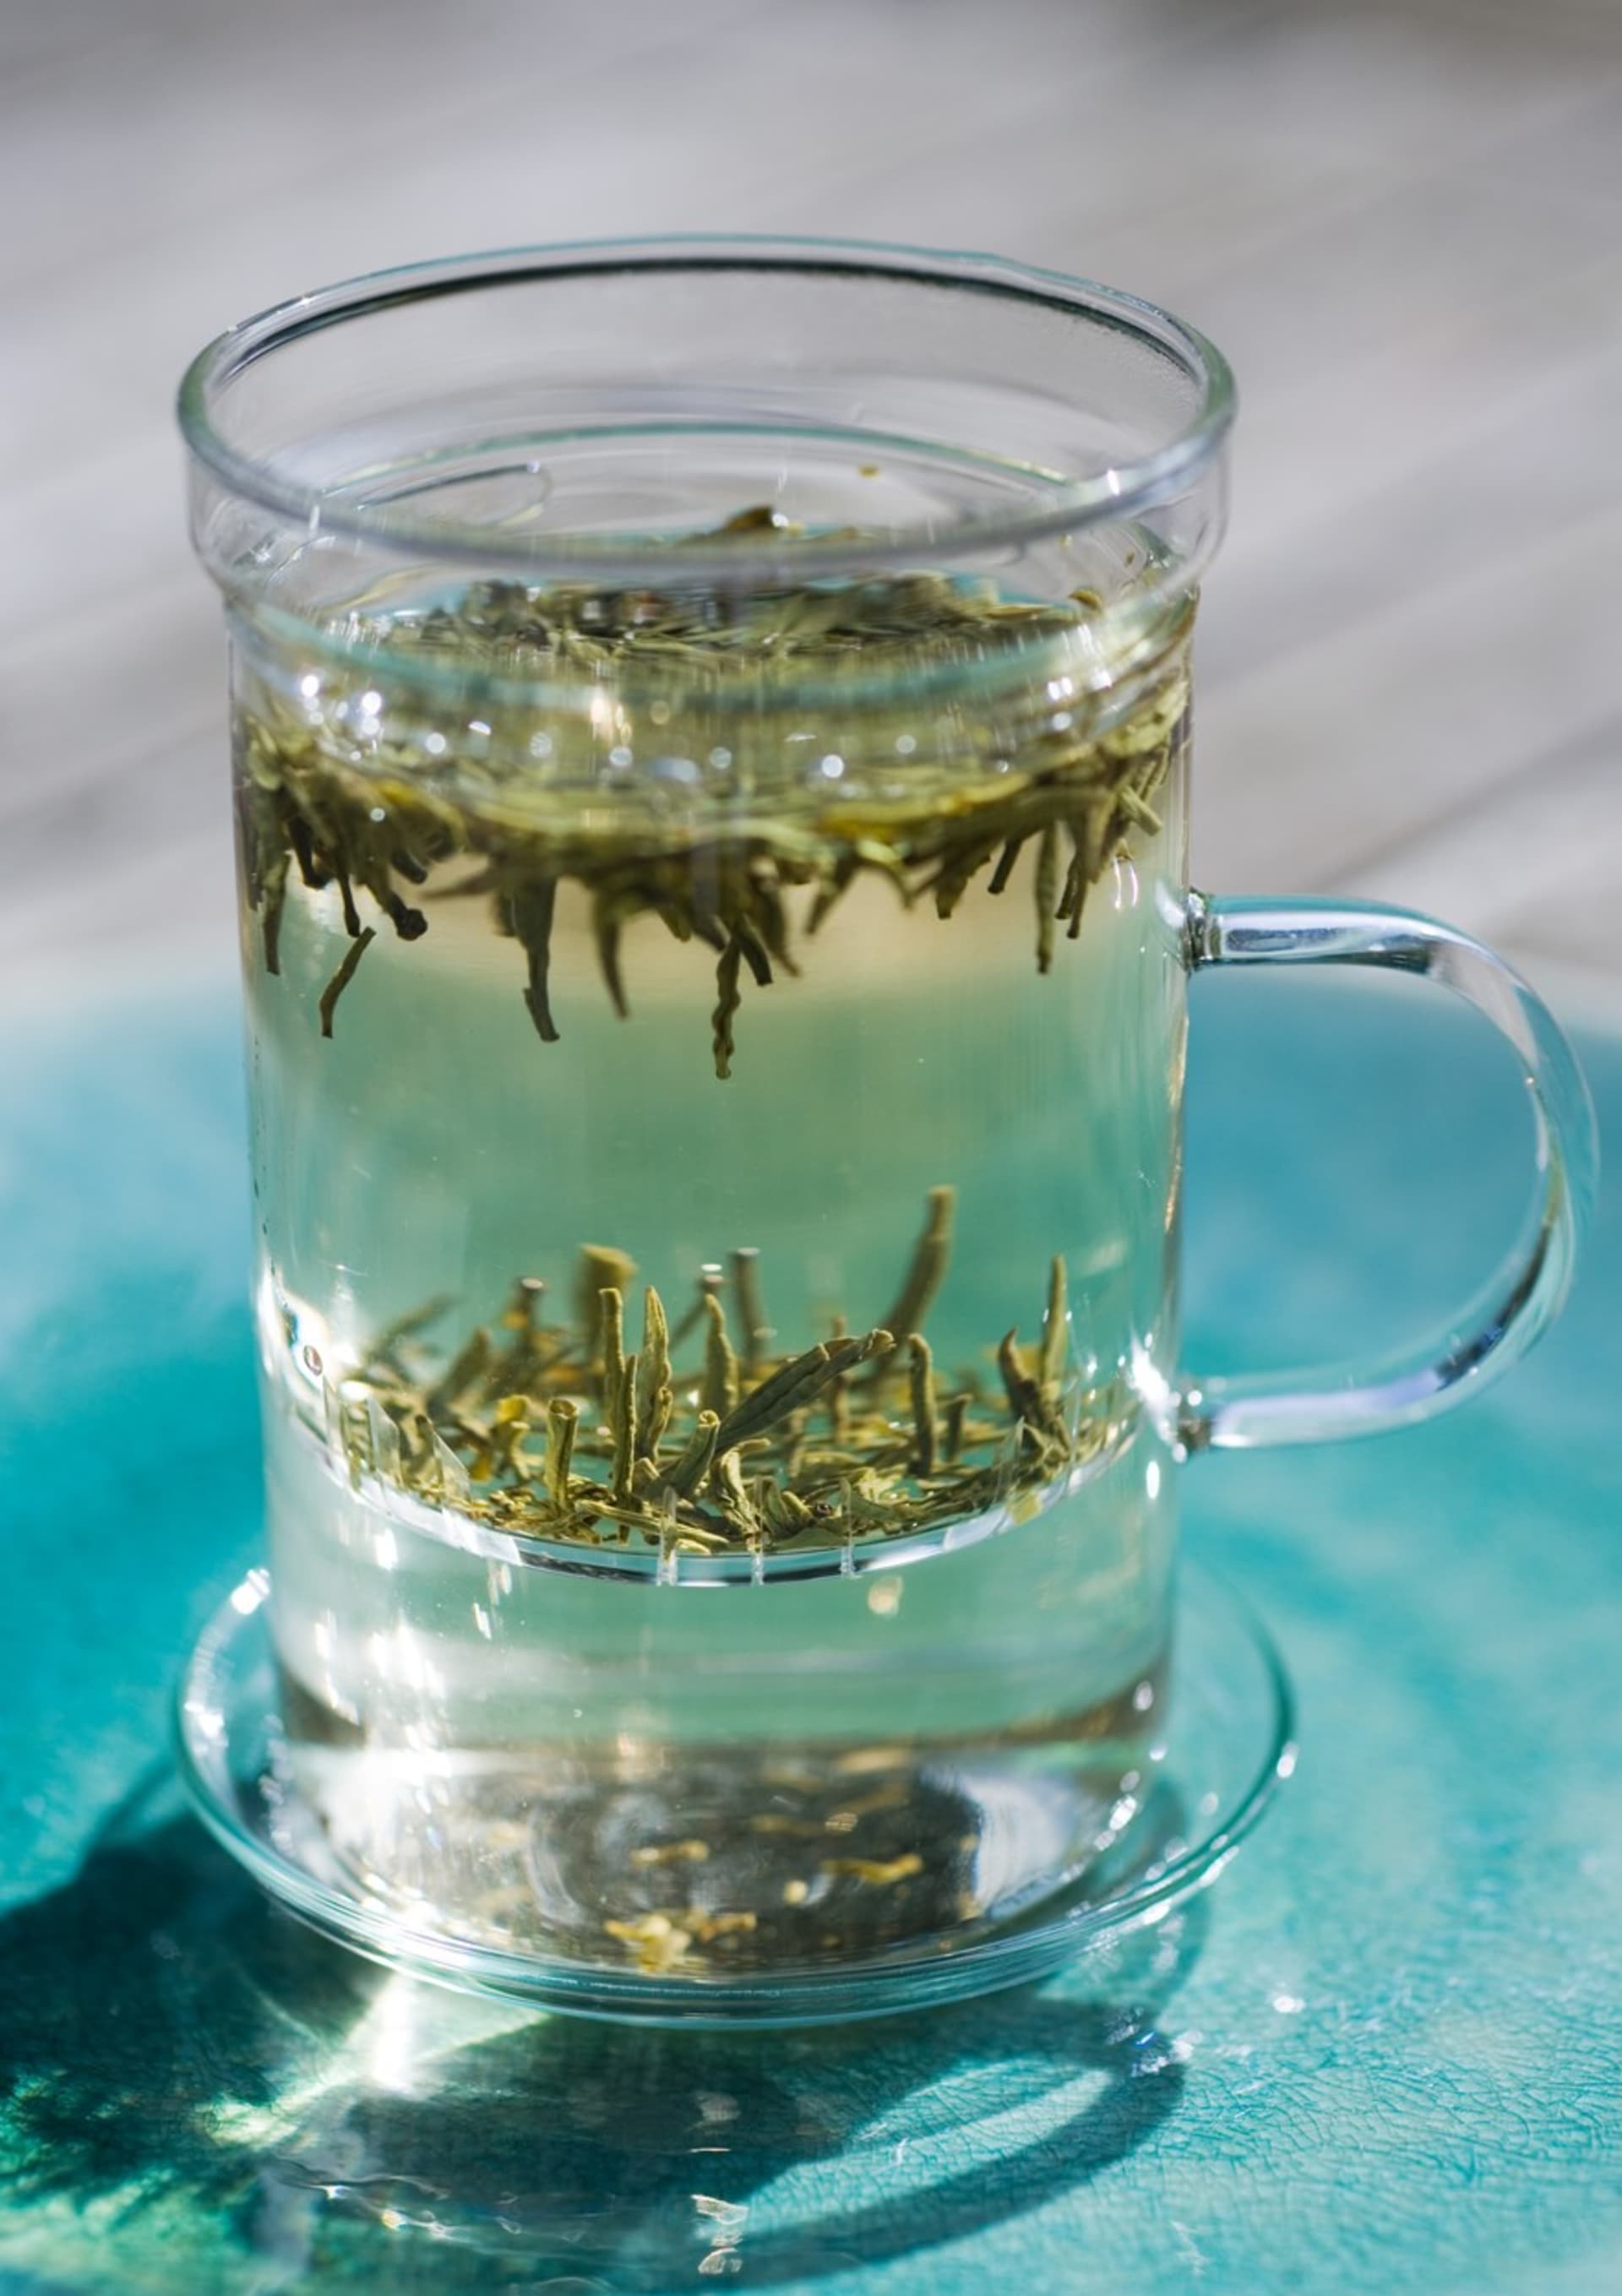 Čaj s hmyzím extraktem?